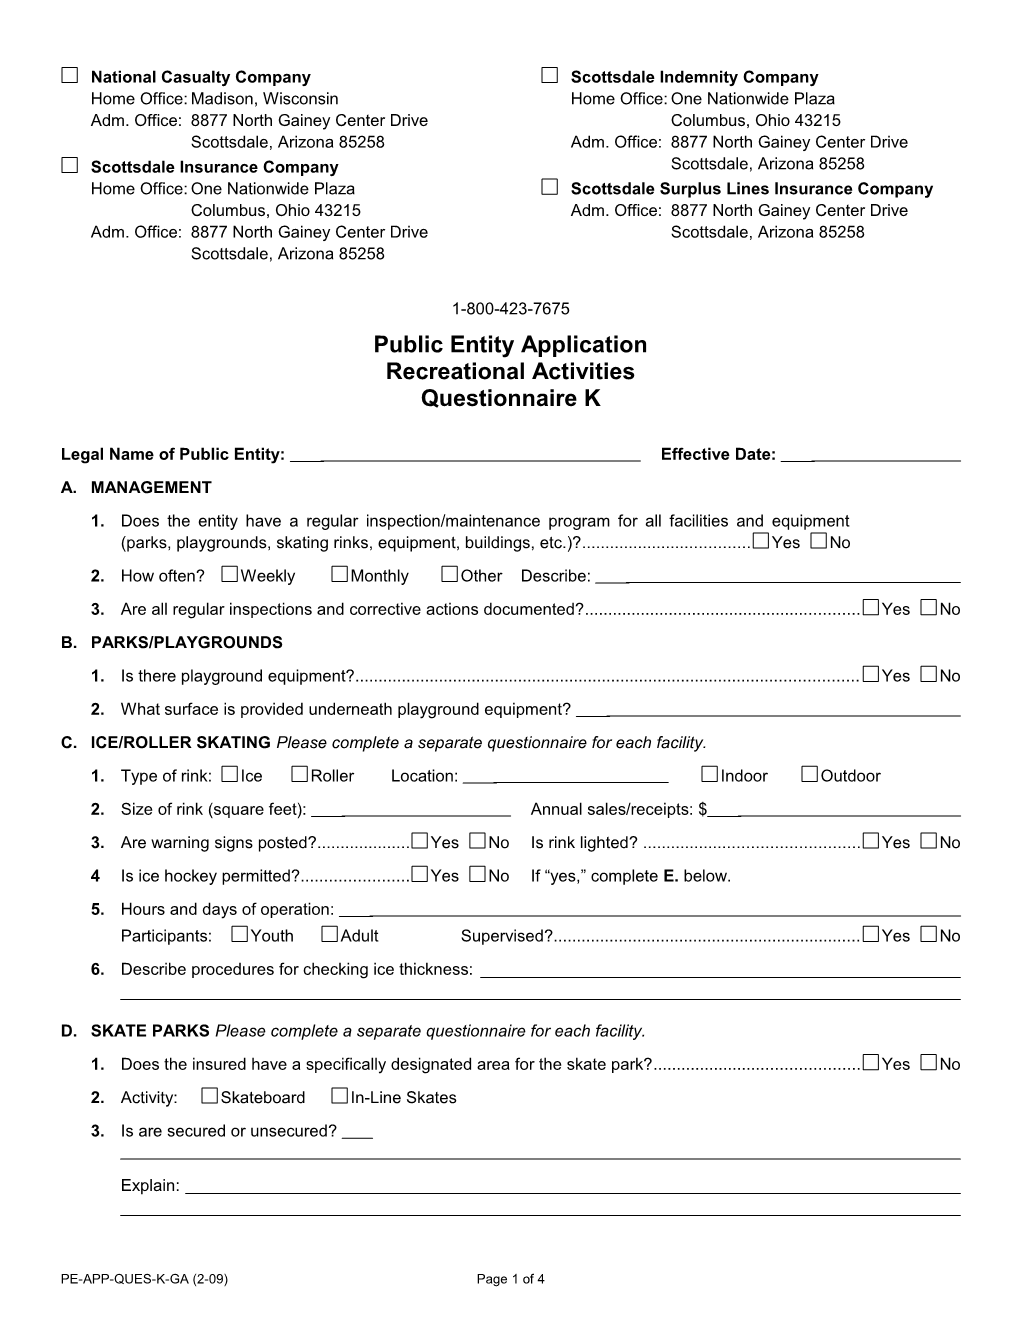 Public Entity Application Recreational Activities Questionnaire K